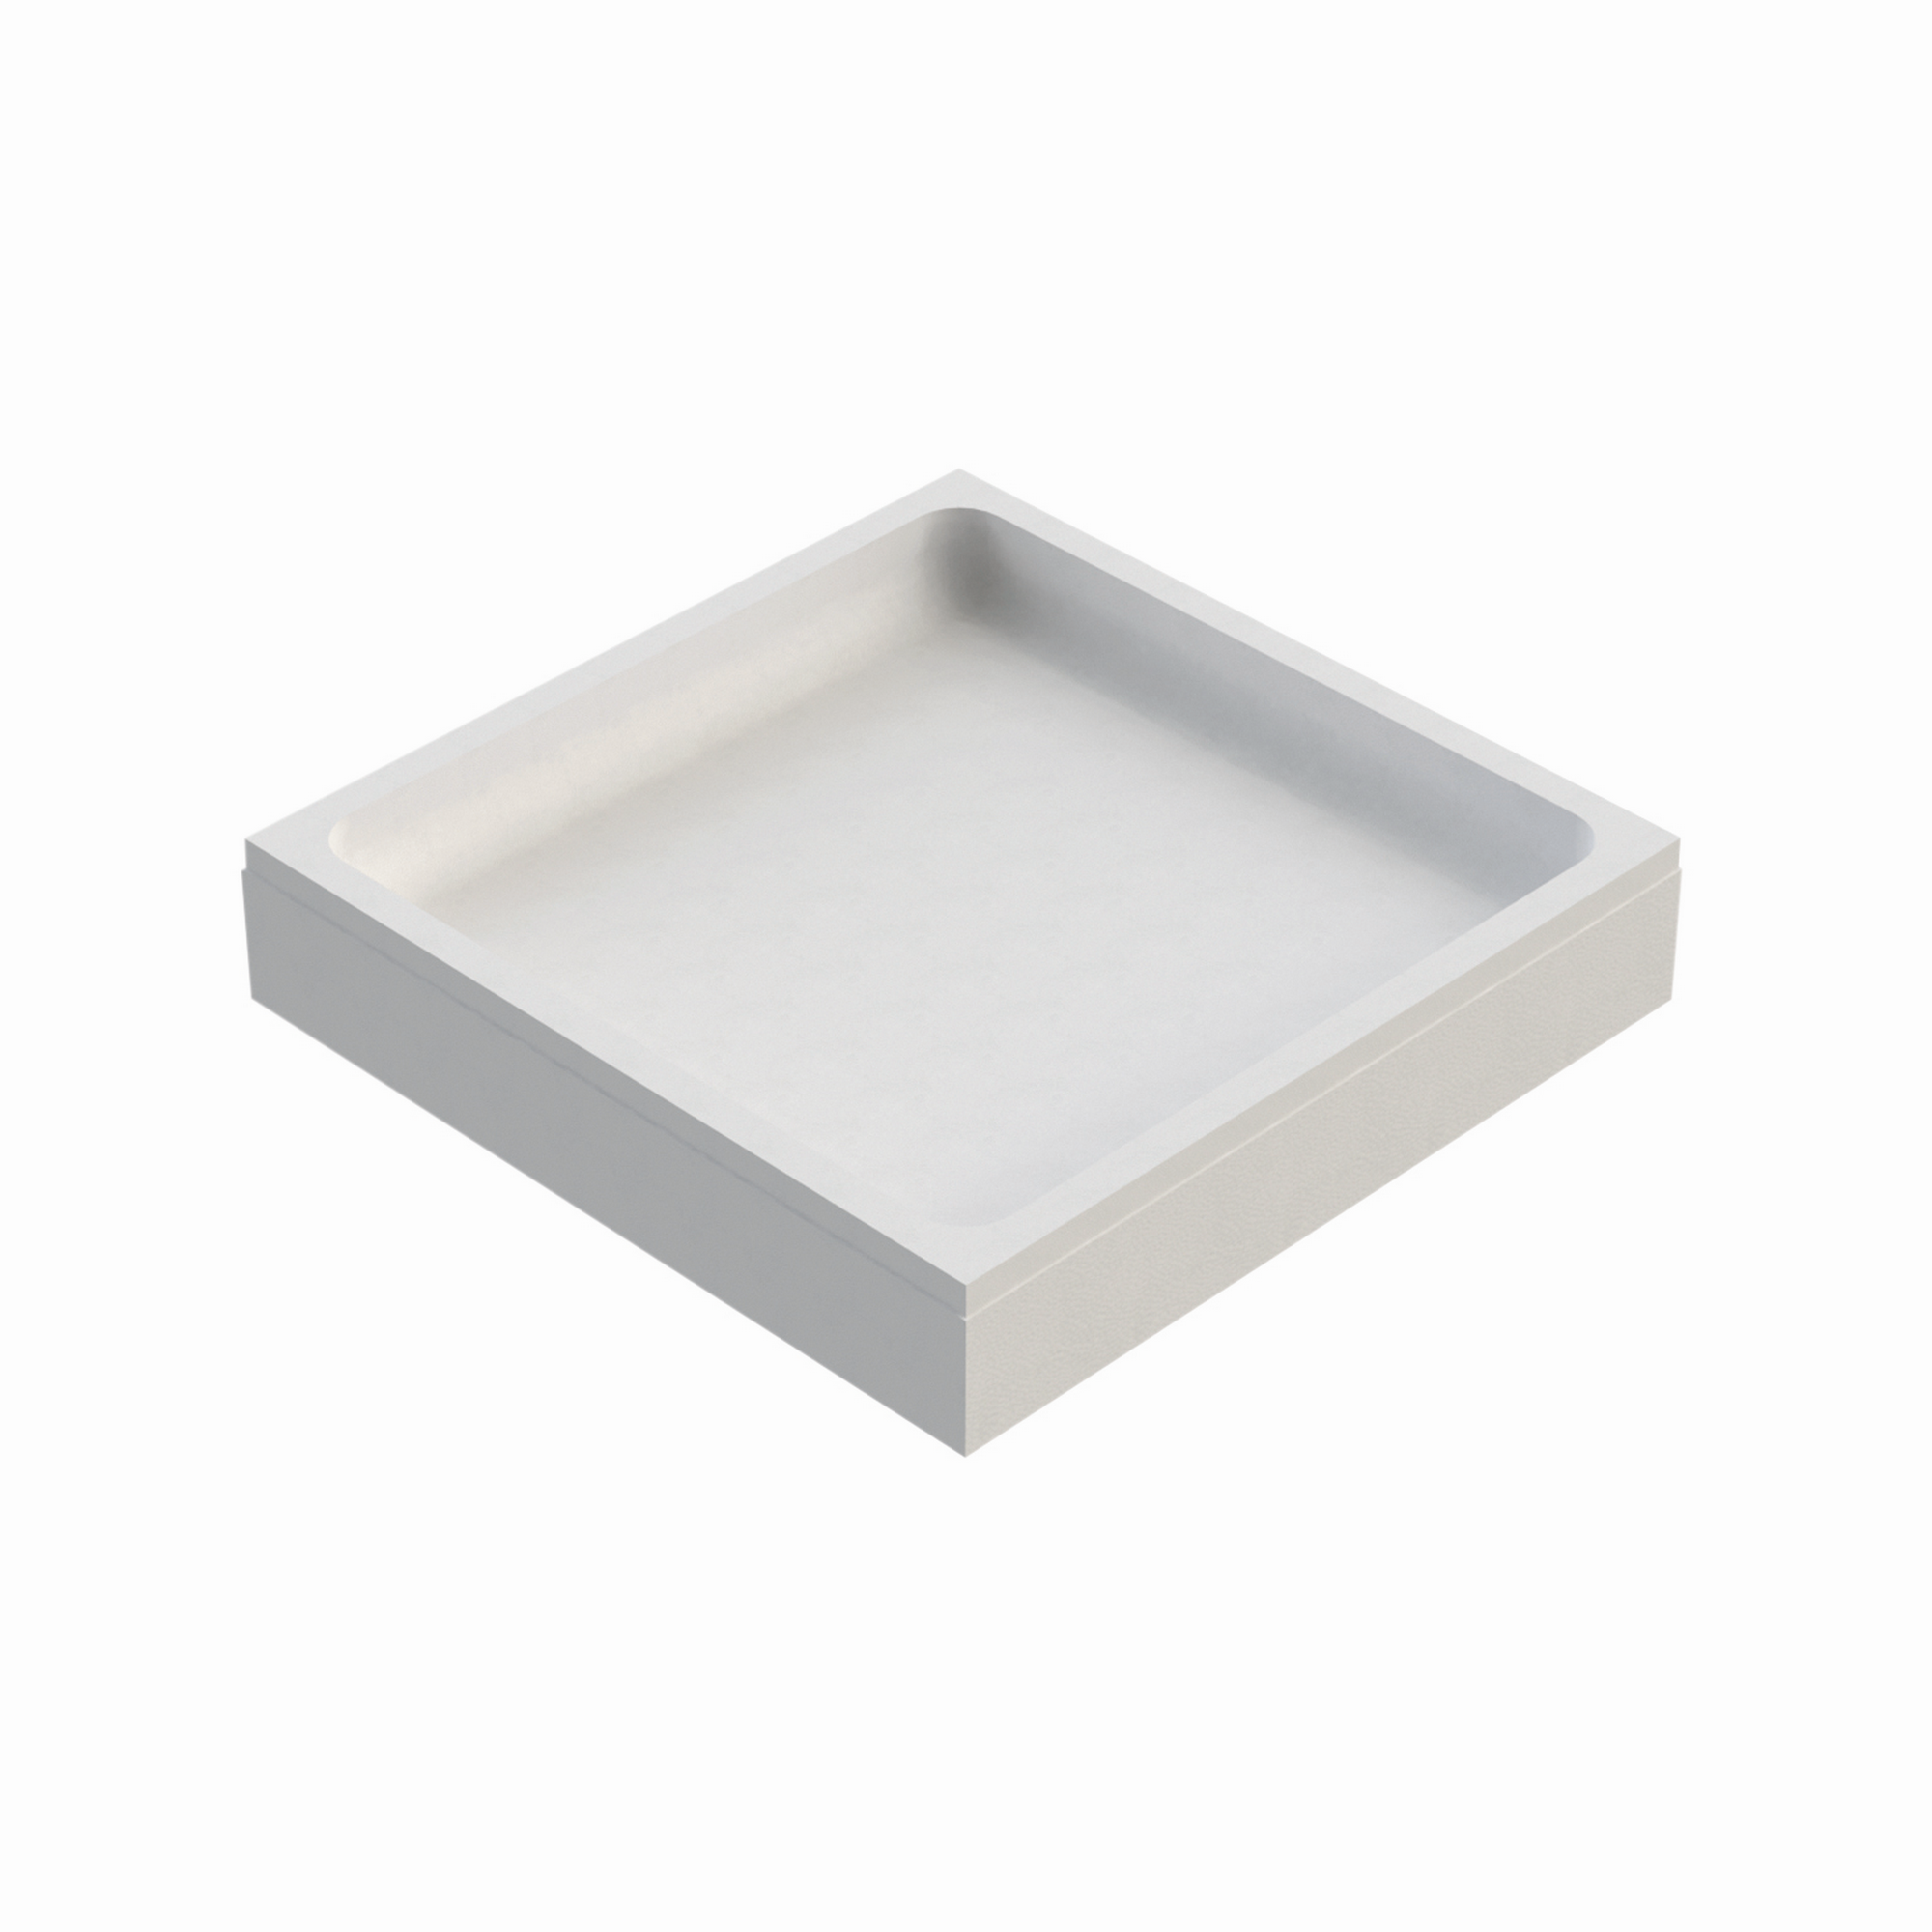 Wannenträger zu quadratischen Duschwanne 80 x 80 cm weiß + product picture